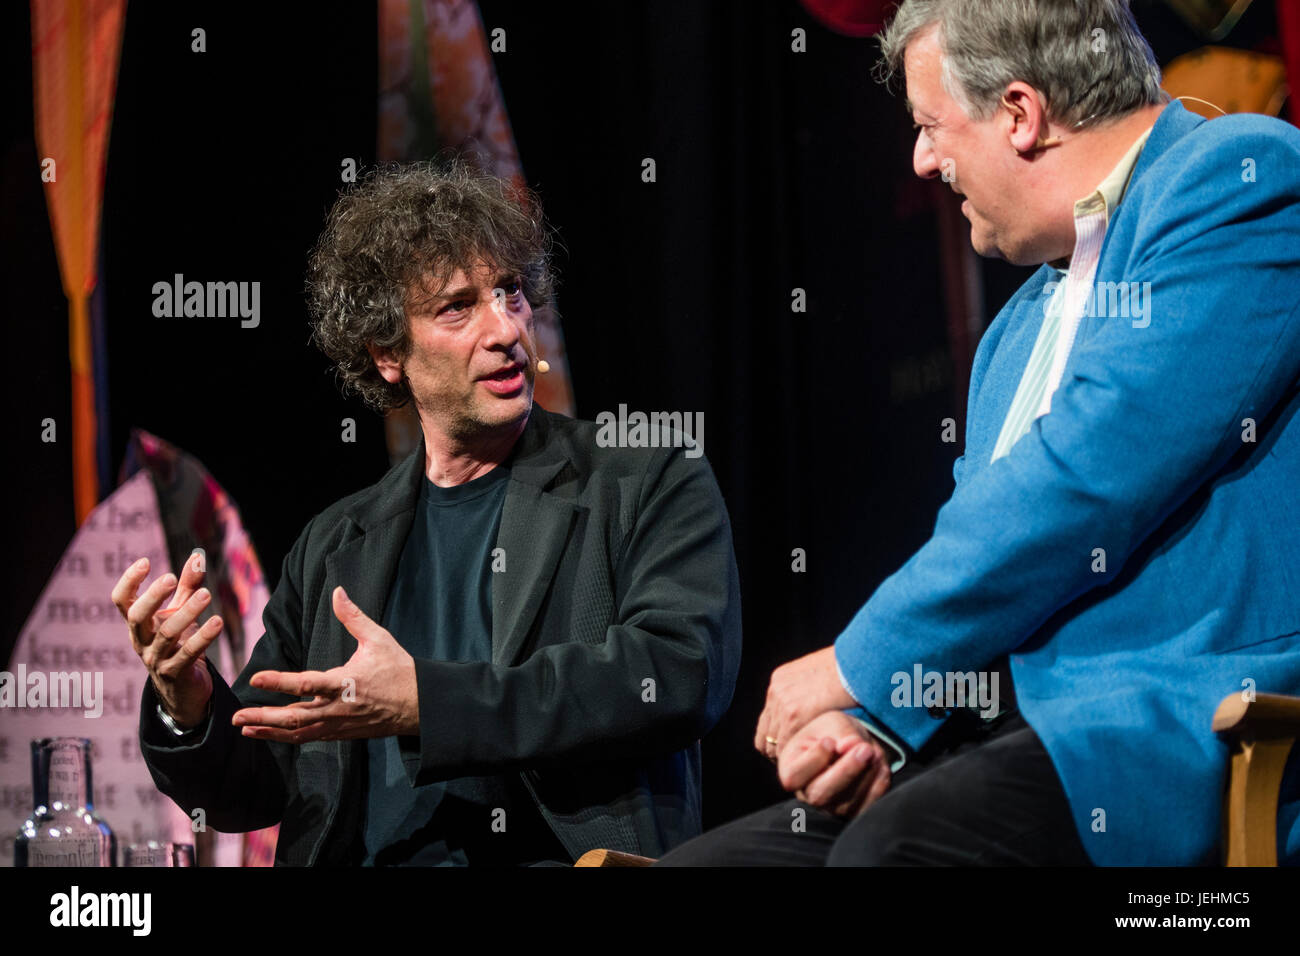 Neil Gaiman, autore della breve fiction, romanzi, fumetti, romanzi grafici, audio Theatre, e pellicole, in conversazione con Stephen Fry al 2017 Hay Festival della letteratura e delle arti, Hay on Wye, Wales UK Foto Stock